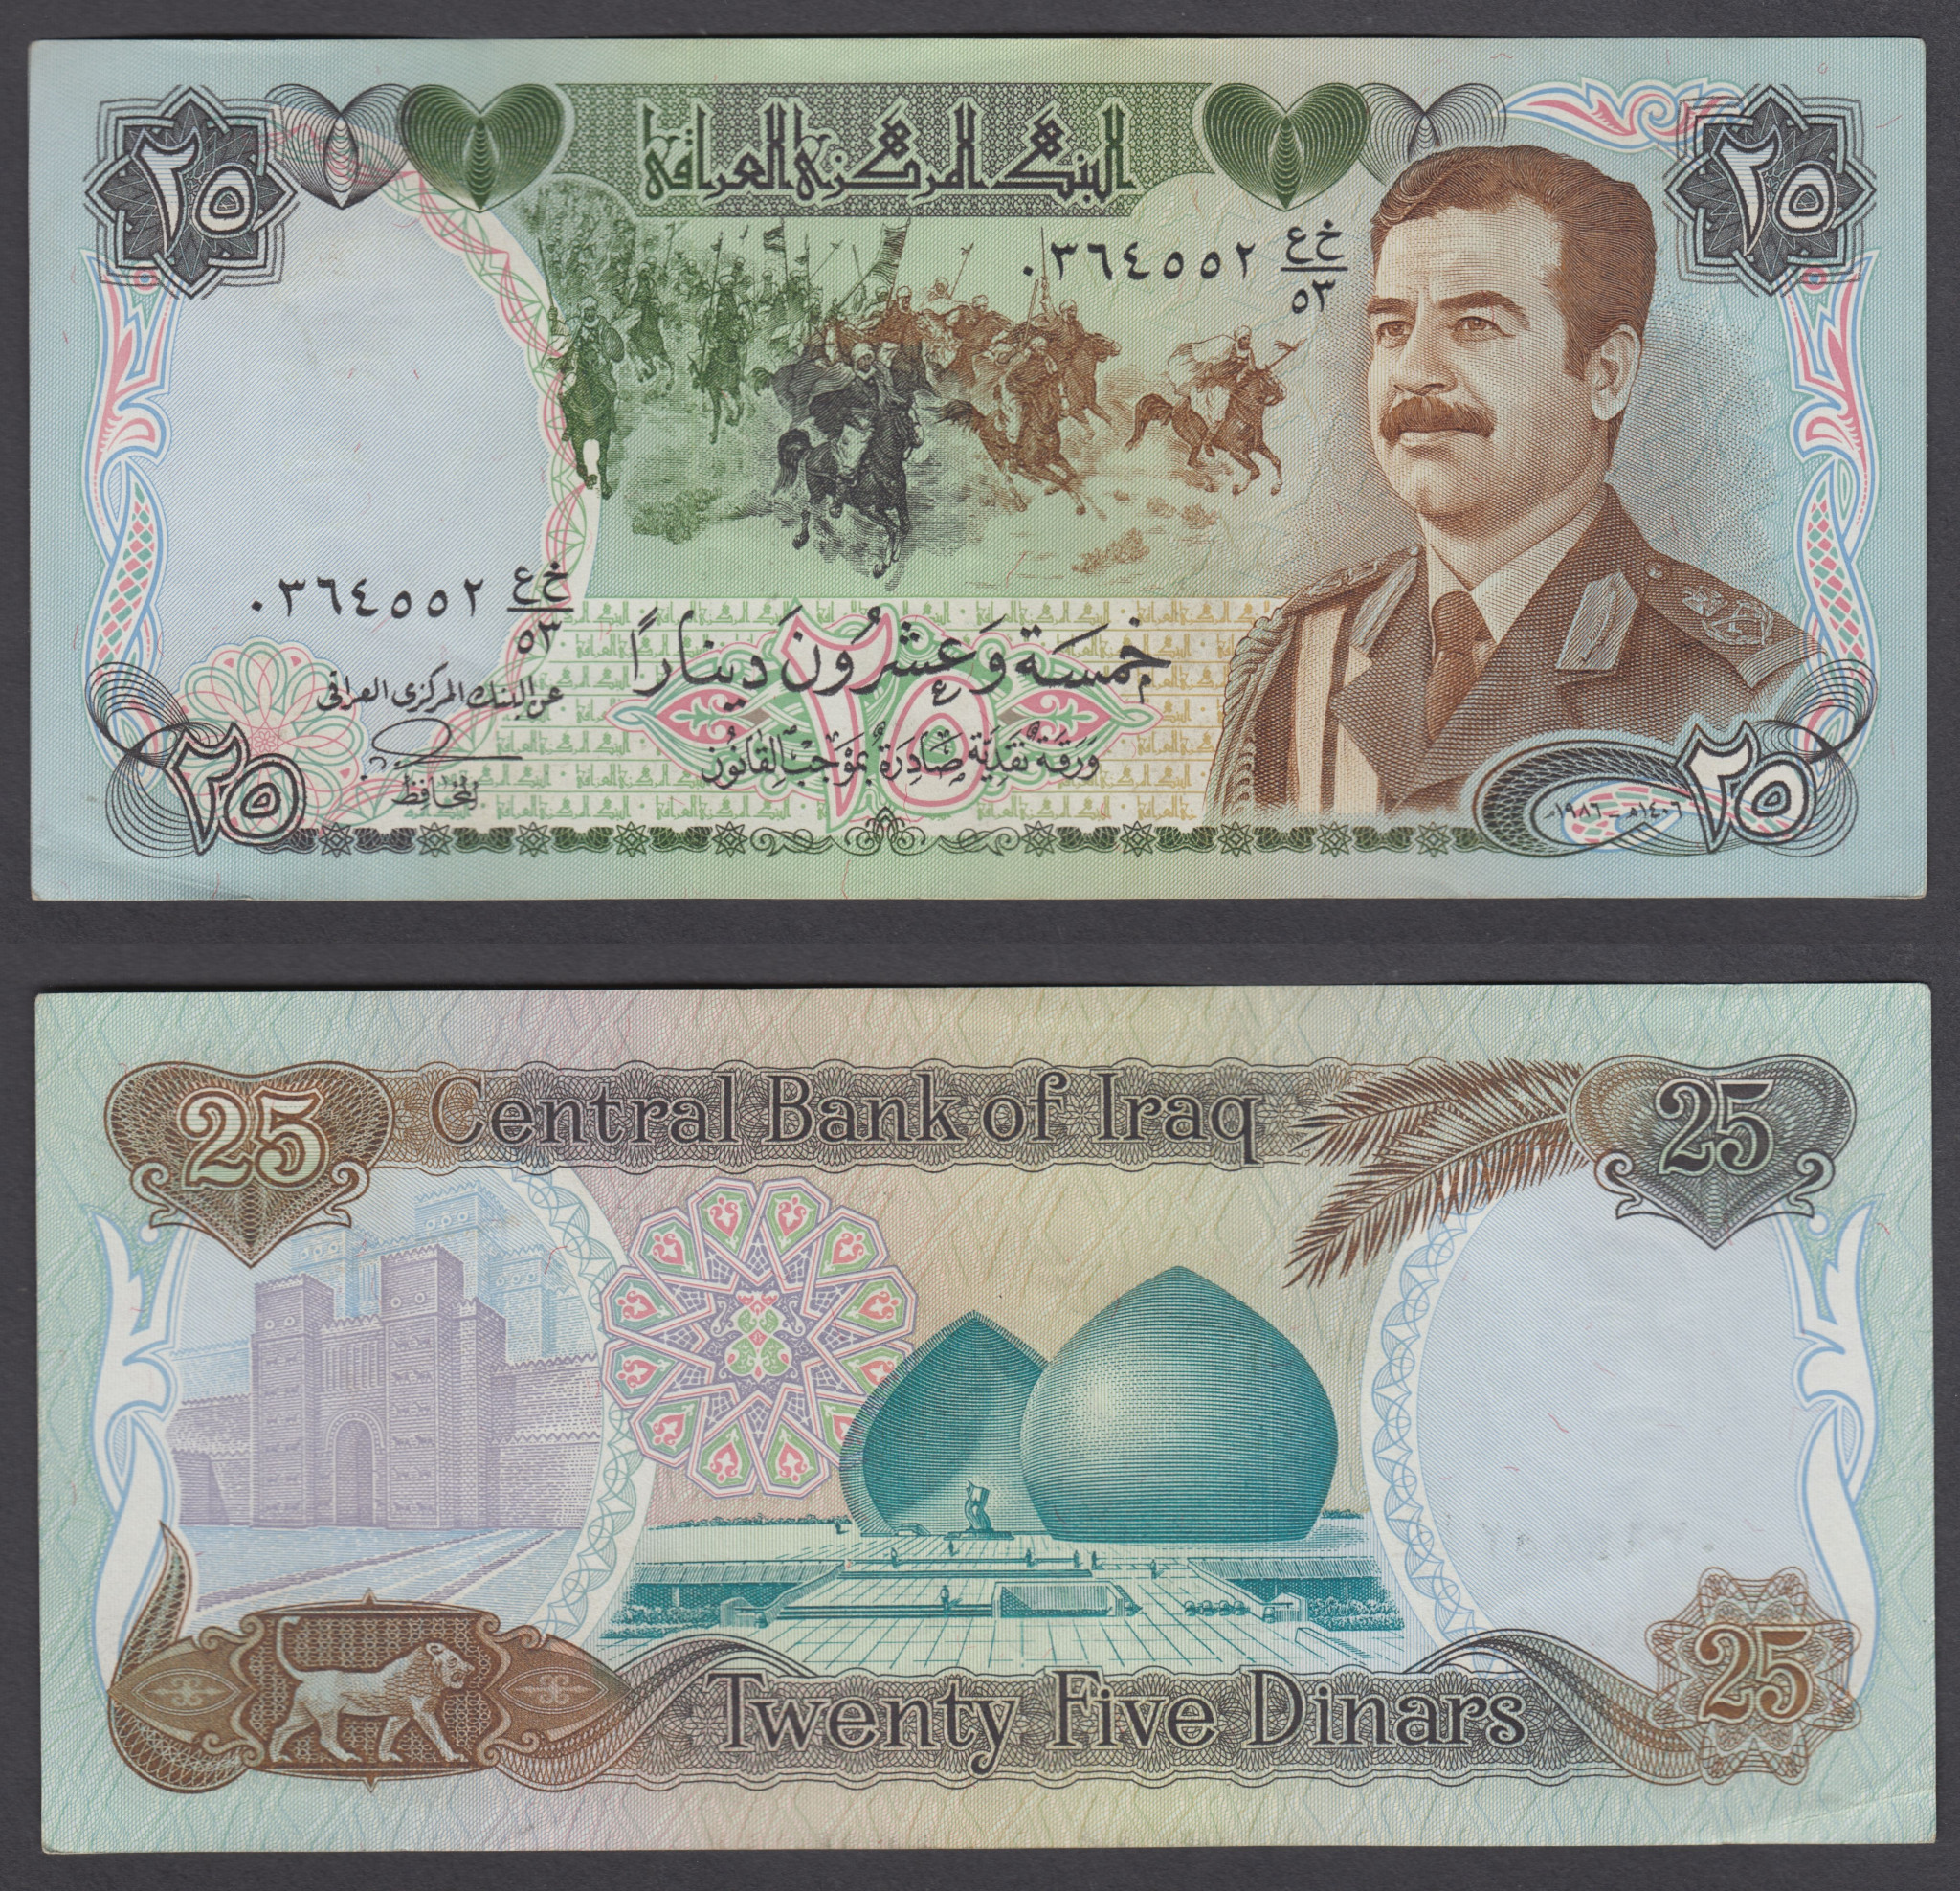 Saddam Hussein Military Uniform Iraq 1986 25 Dinars Banknote AU P73 Iraqi Dinar